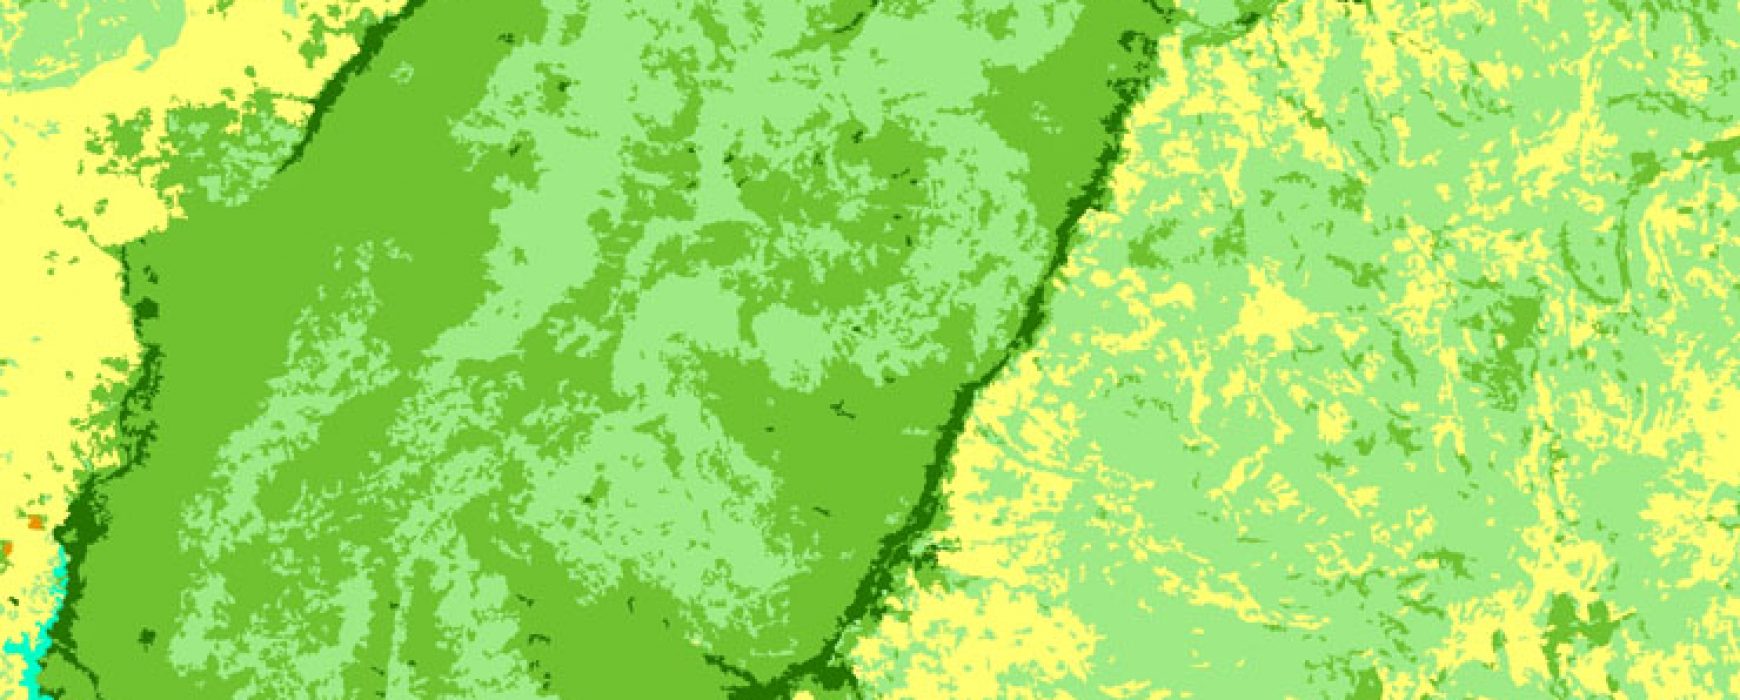 Land cover database, BURKINA FASO